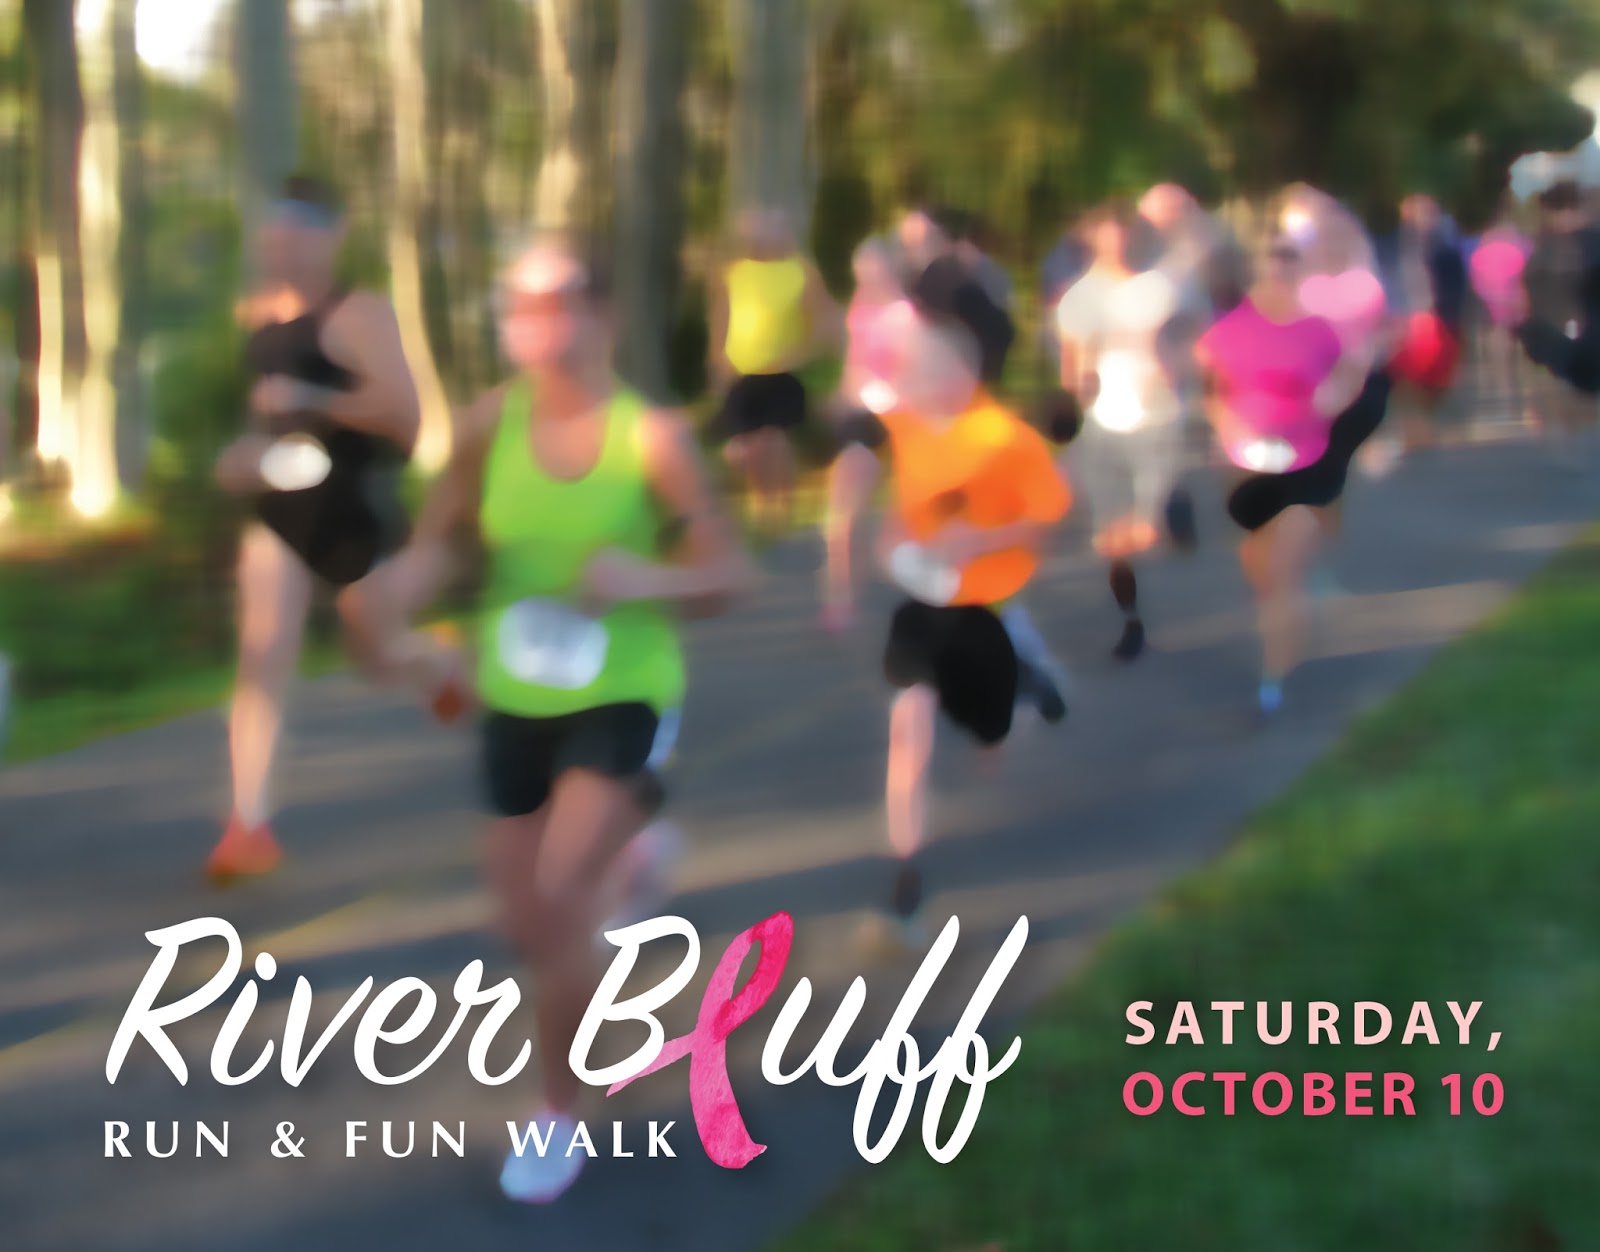 Campaign Marketing for River Bluff Run